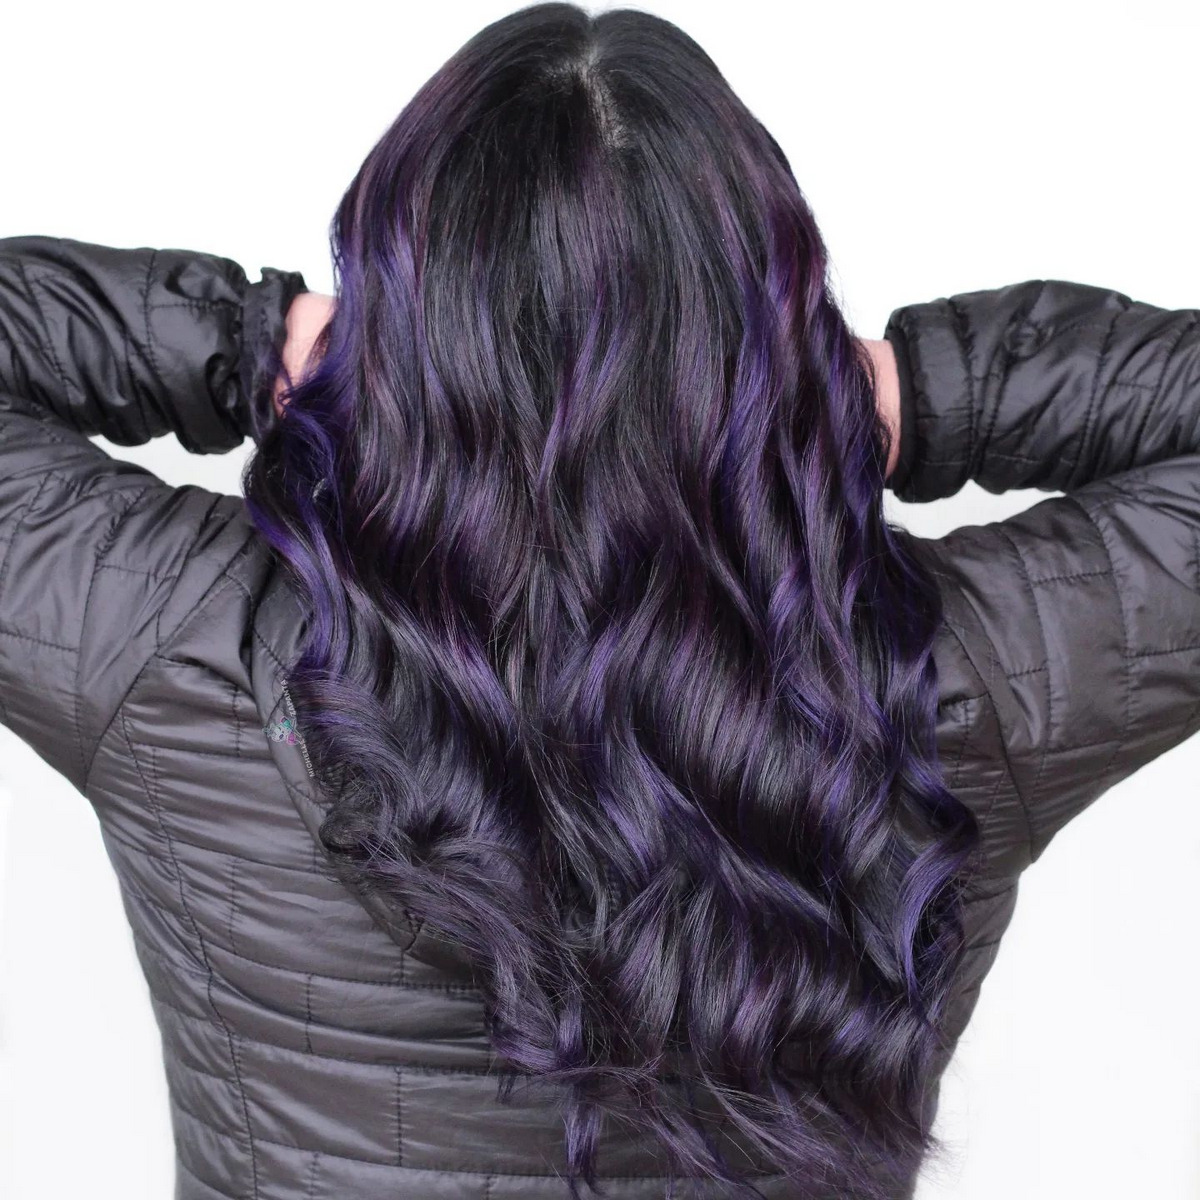 Black Hair with Purple Streak